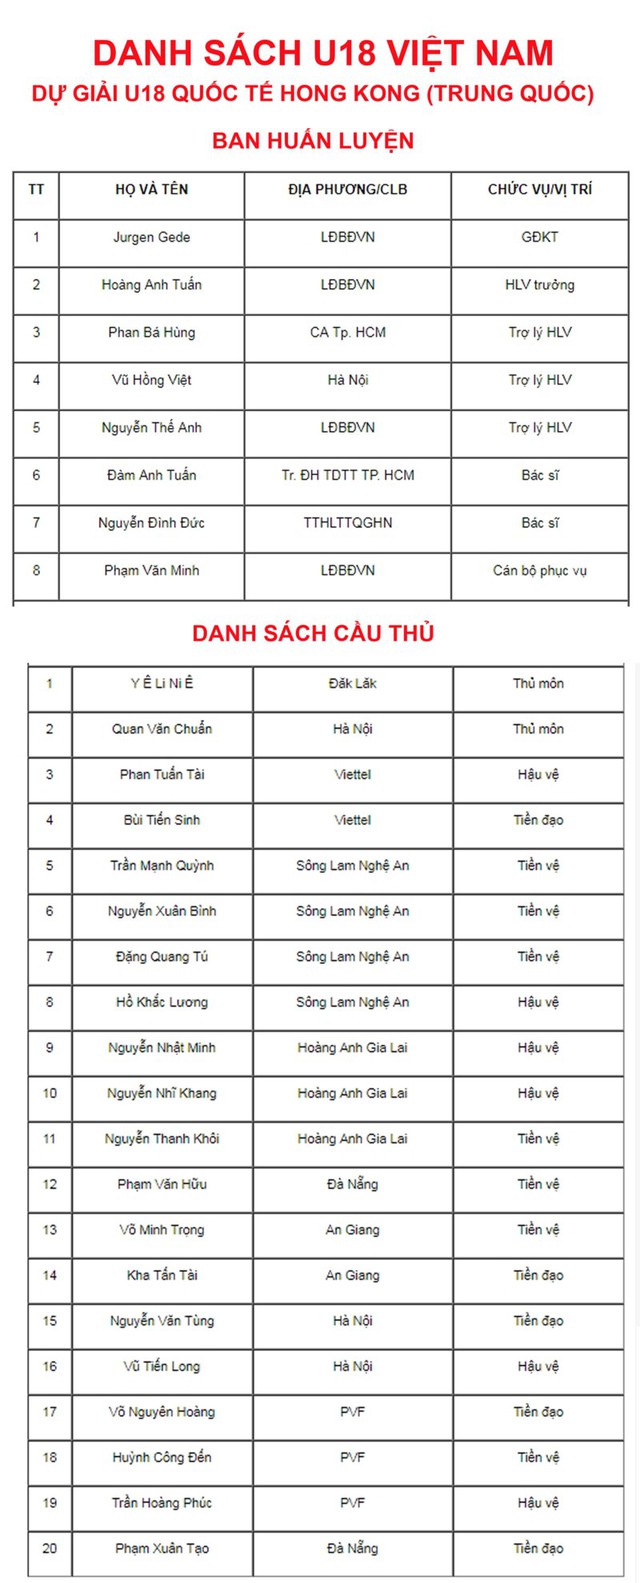 CHÍNH THỨC: Danh sách 20 cầu thủ U18 Việt Nam dự Giải U18 Quốc tế ...